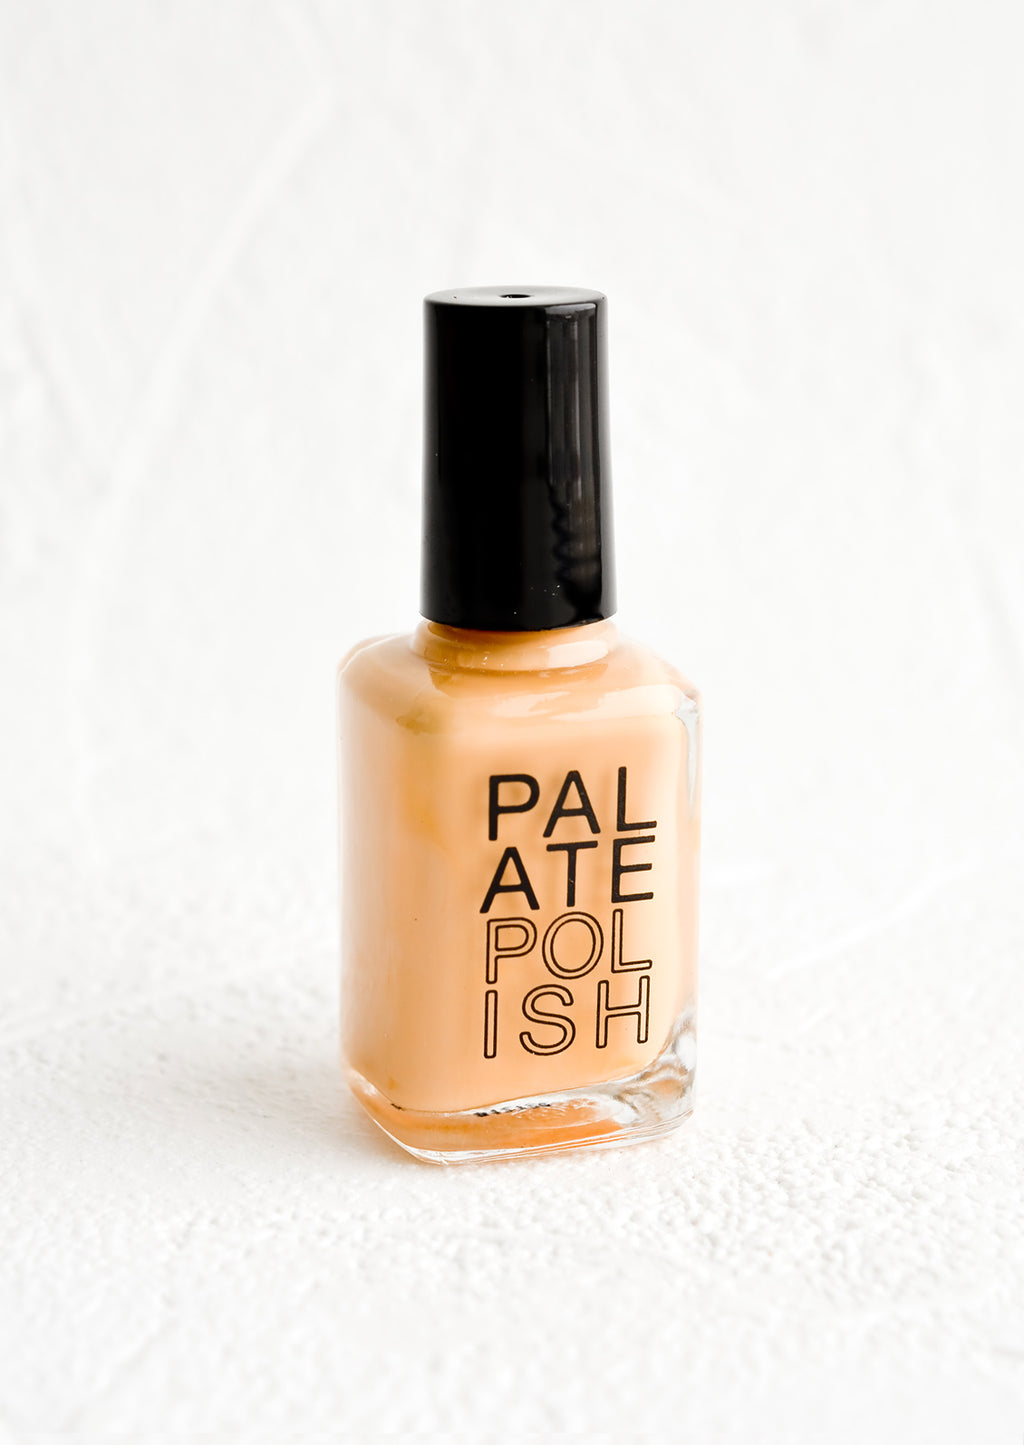 Chai Latte: A bottle of nail polish in peach.